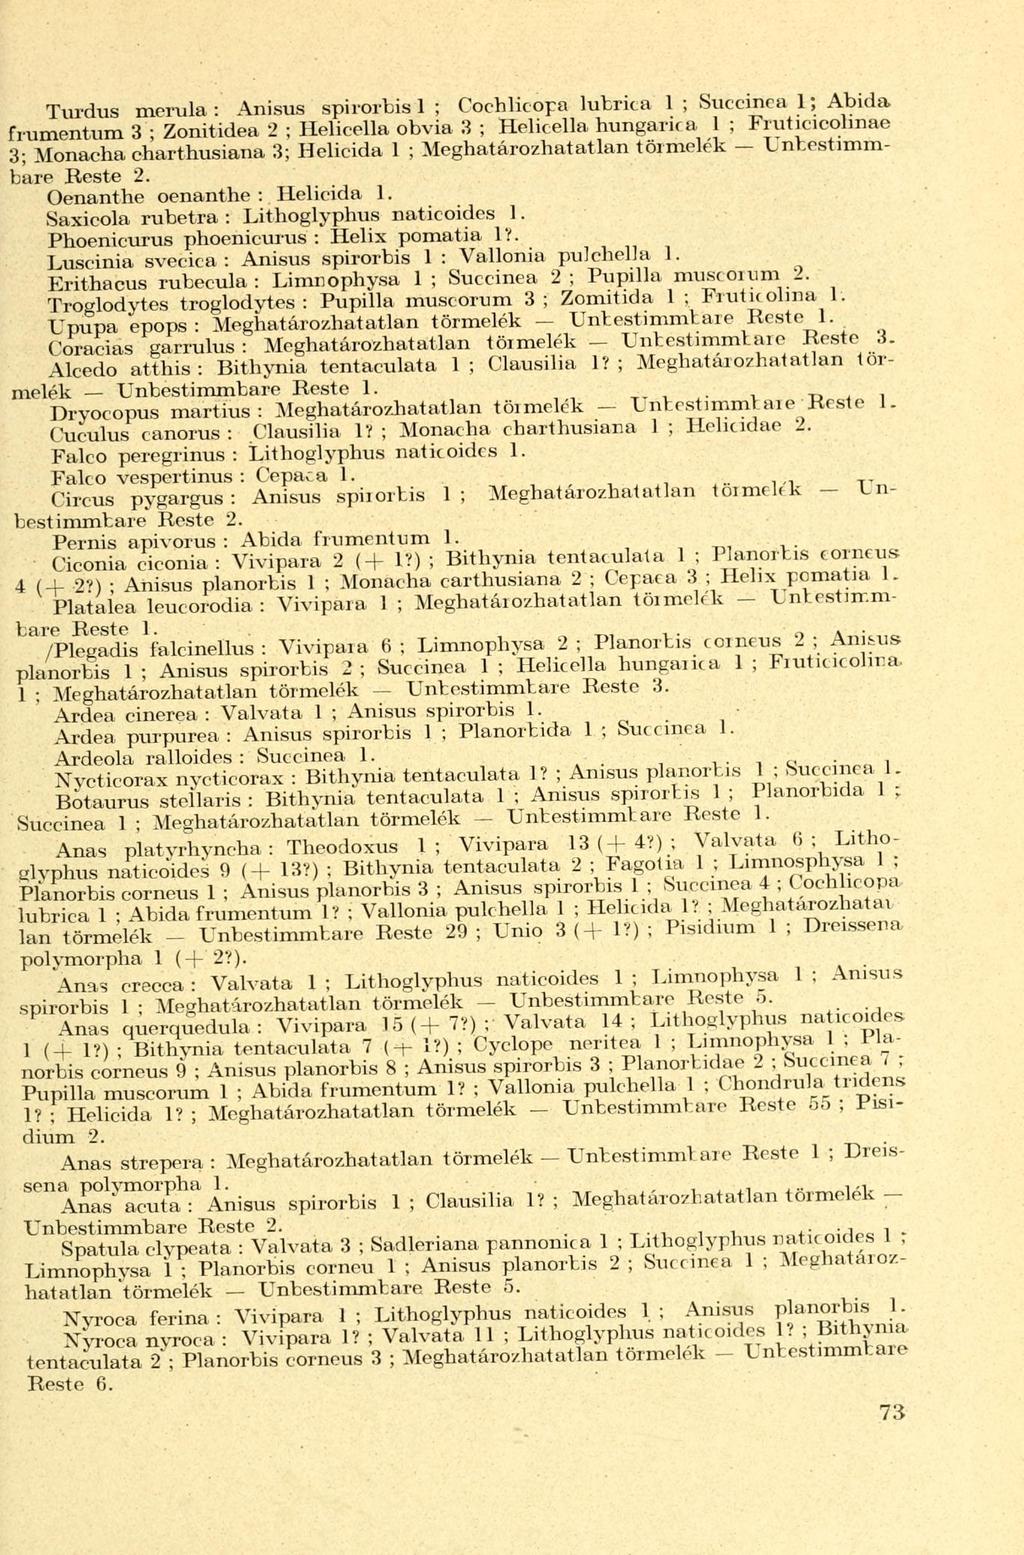 Turdus merula : Anisus spirorbis 1 ; Cochlicopa lubrica 1 ; Succinea 1; Abida frumentum 3 ; Zonitidea 2 ; Helicella obvia 3 ; Helicella hungarica 1 ; Fruticicolinae 3; Monacha charthusiana 3;